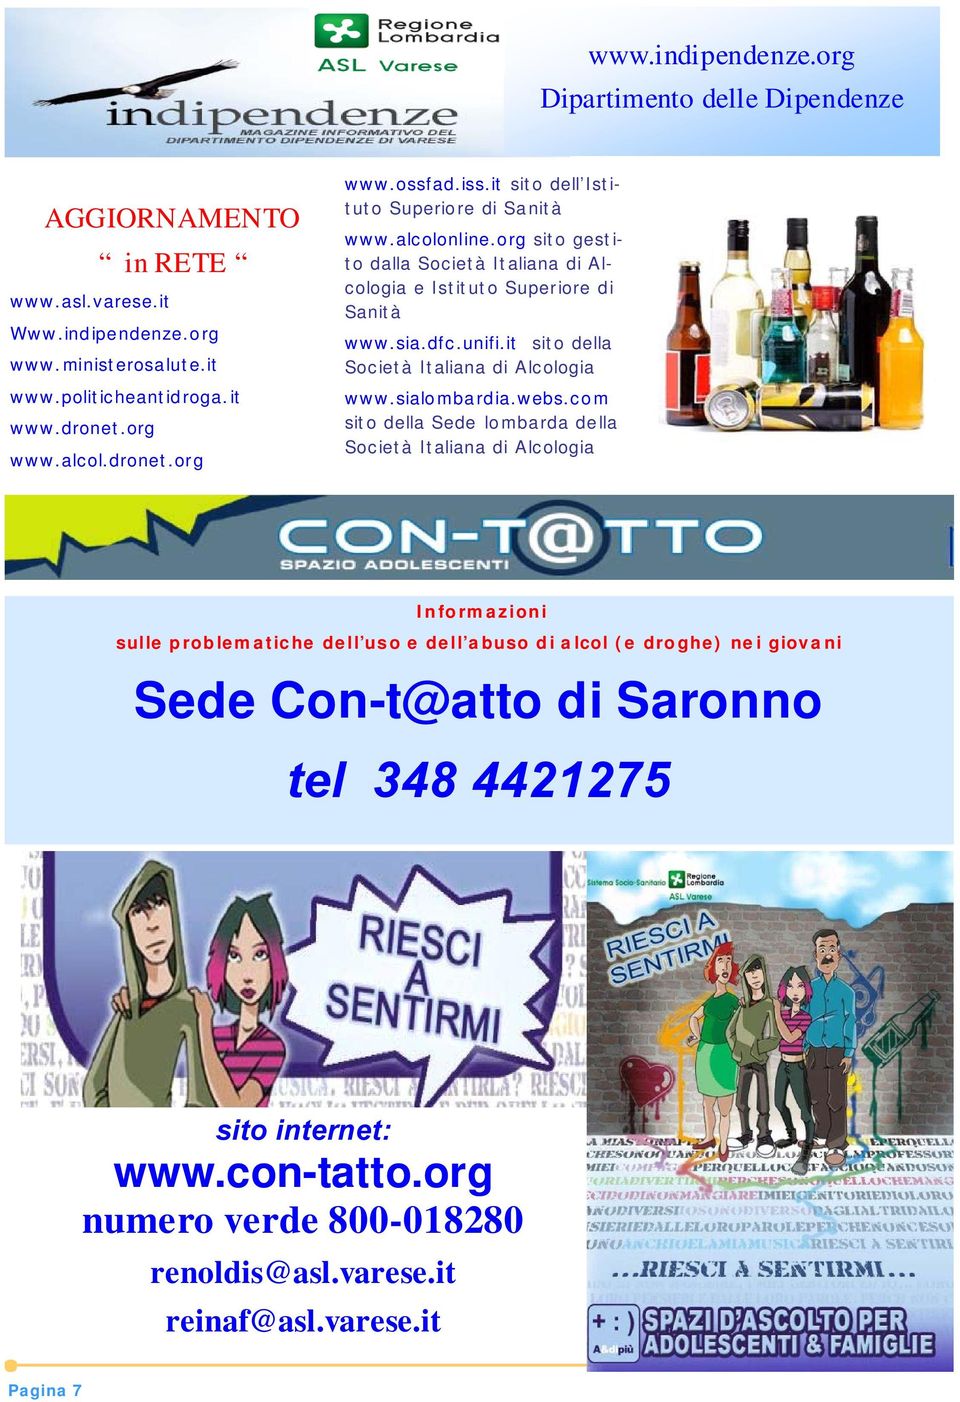 it sito della Società Italiana di Alcologia www.sialombardia.webs.